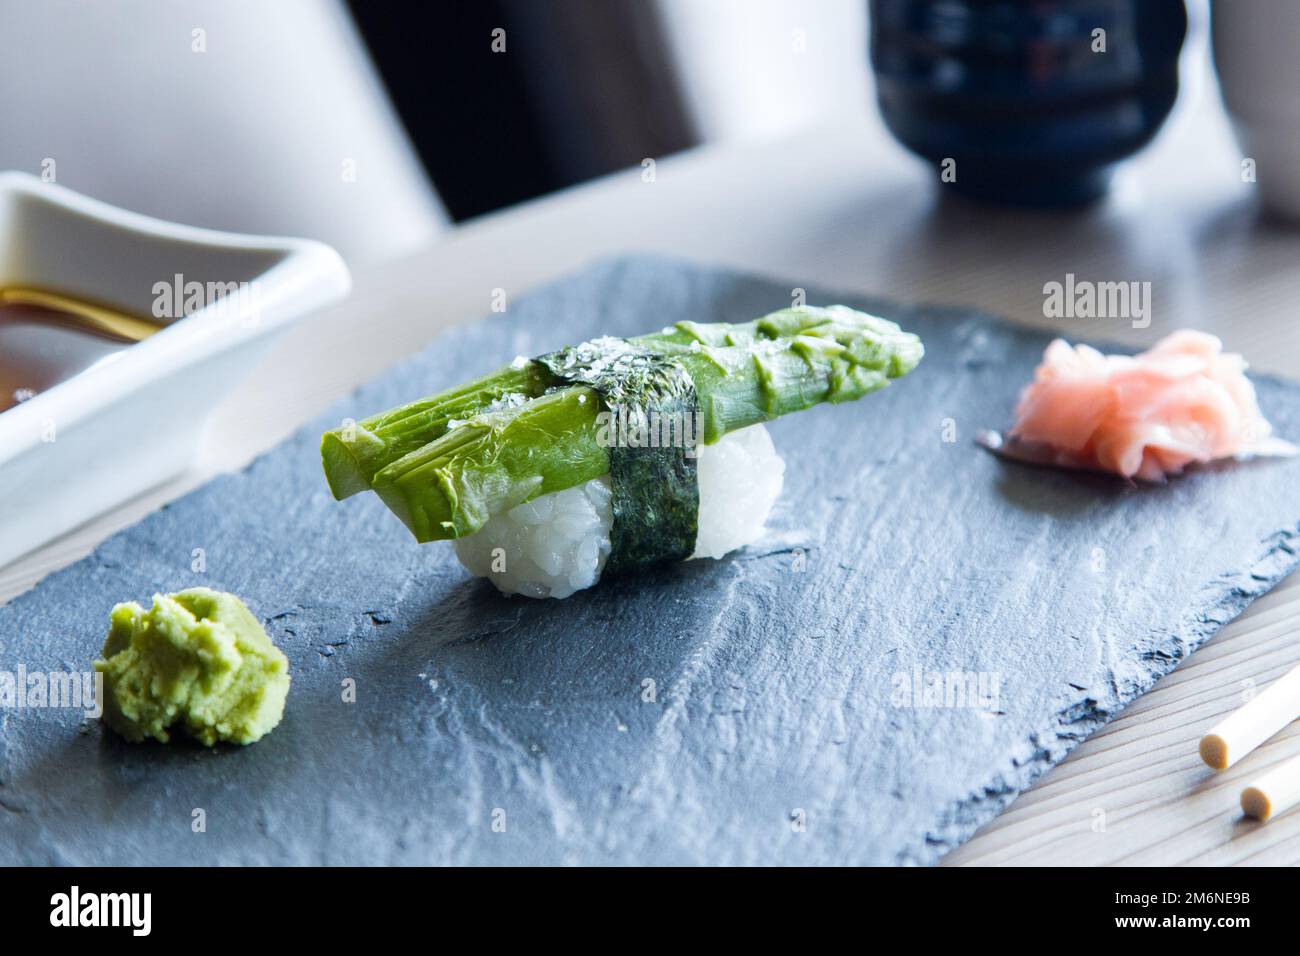 Sushi vegan Nigiri aux asperges vertes. Cuisine japonaise végétarienne. Banque D'Images